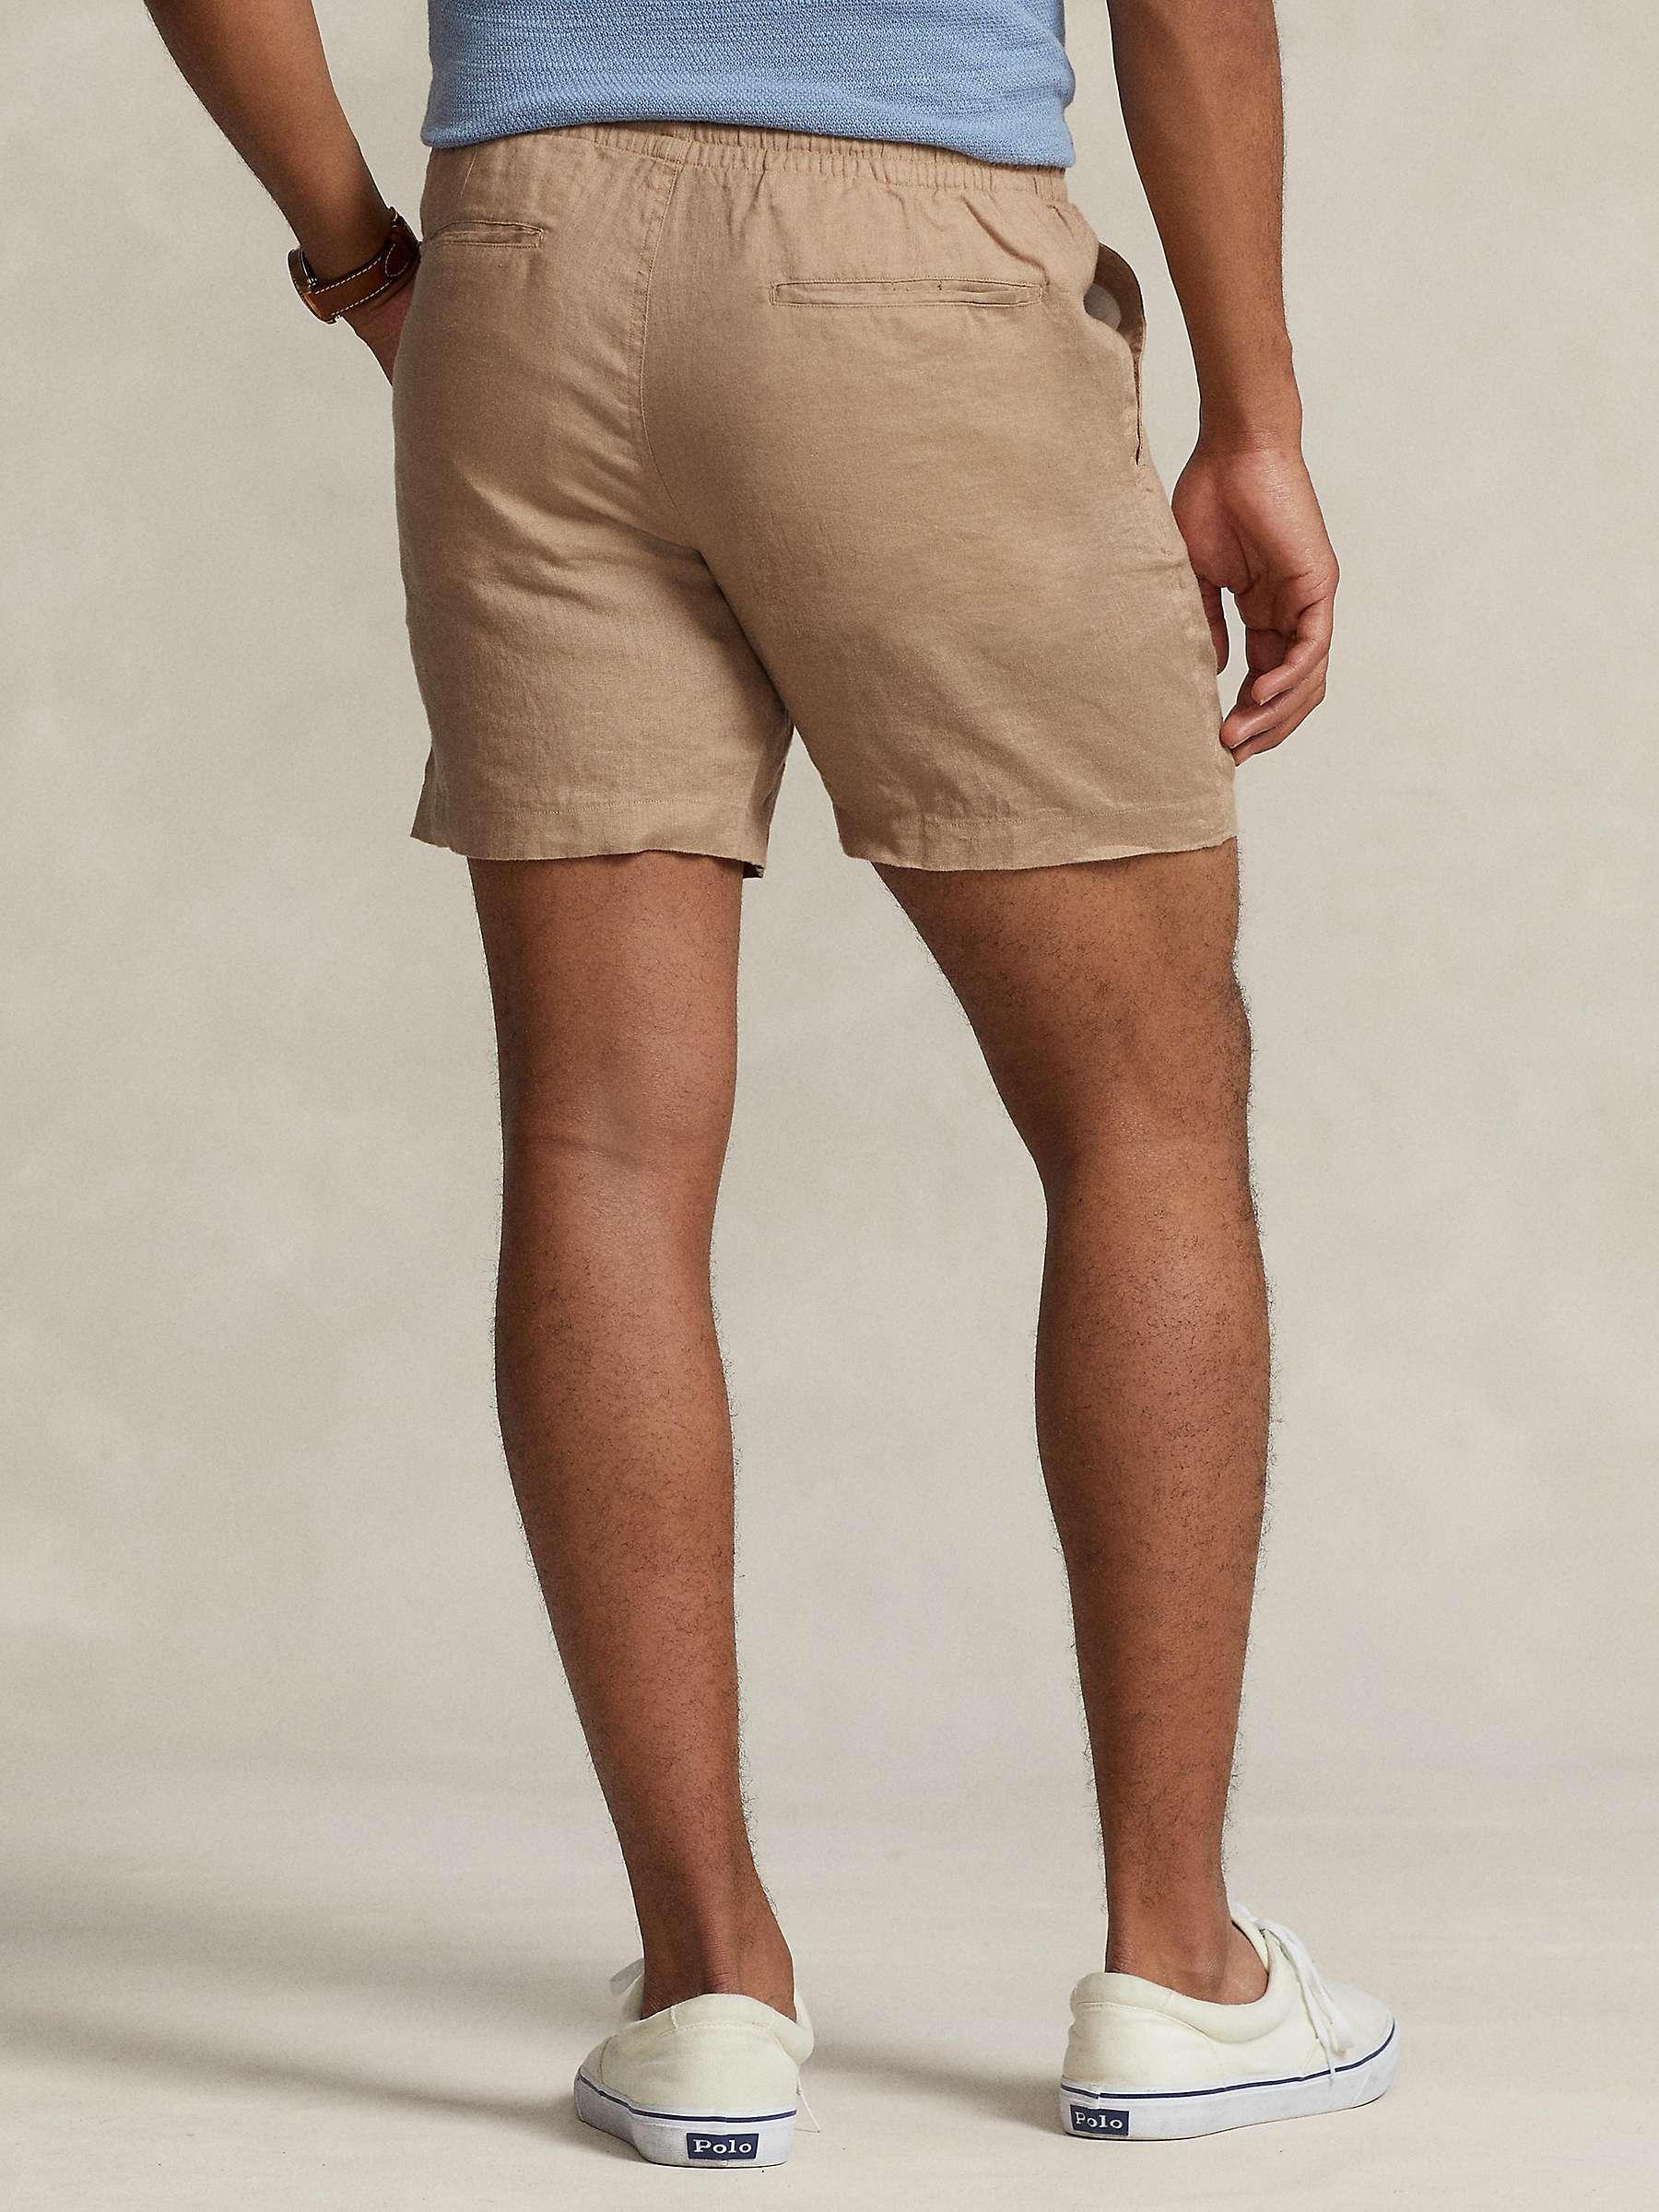 Buy Ralph Lauren Polo Prepseter Linen Shorts Online at johnlewis.com